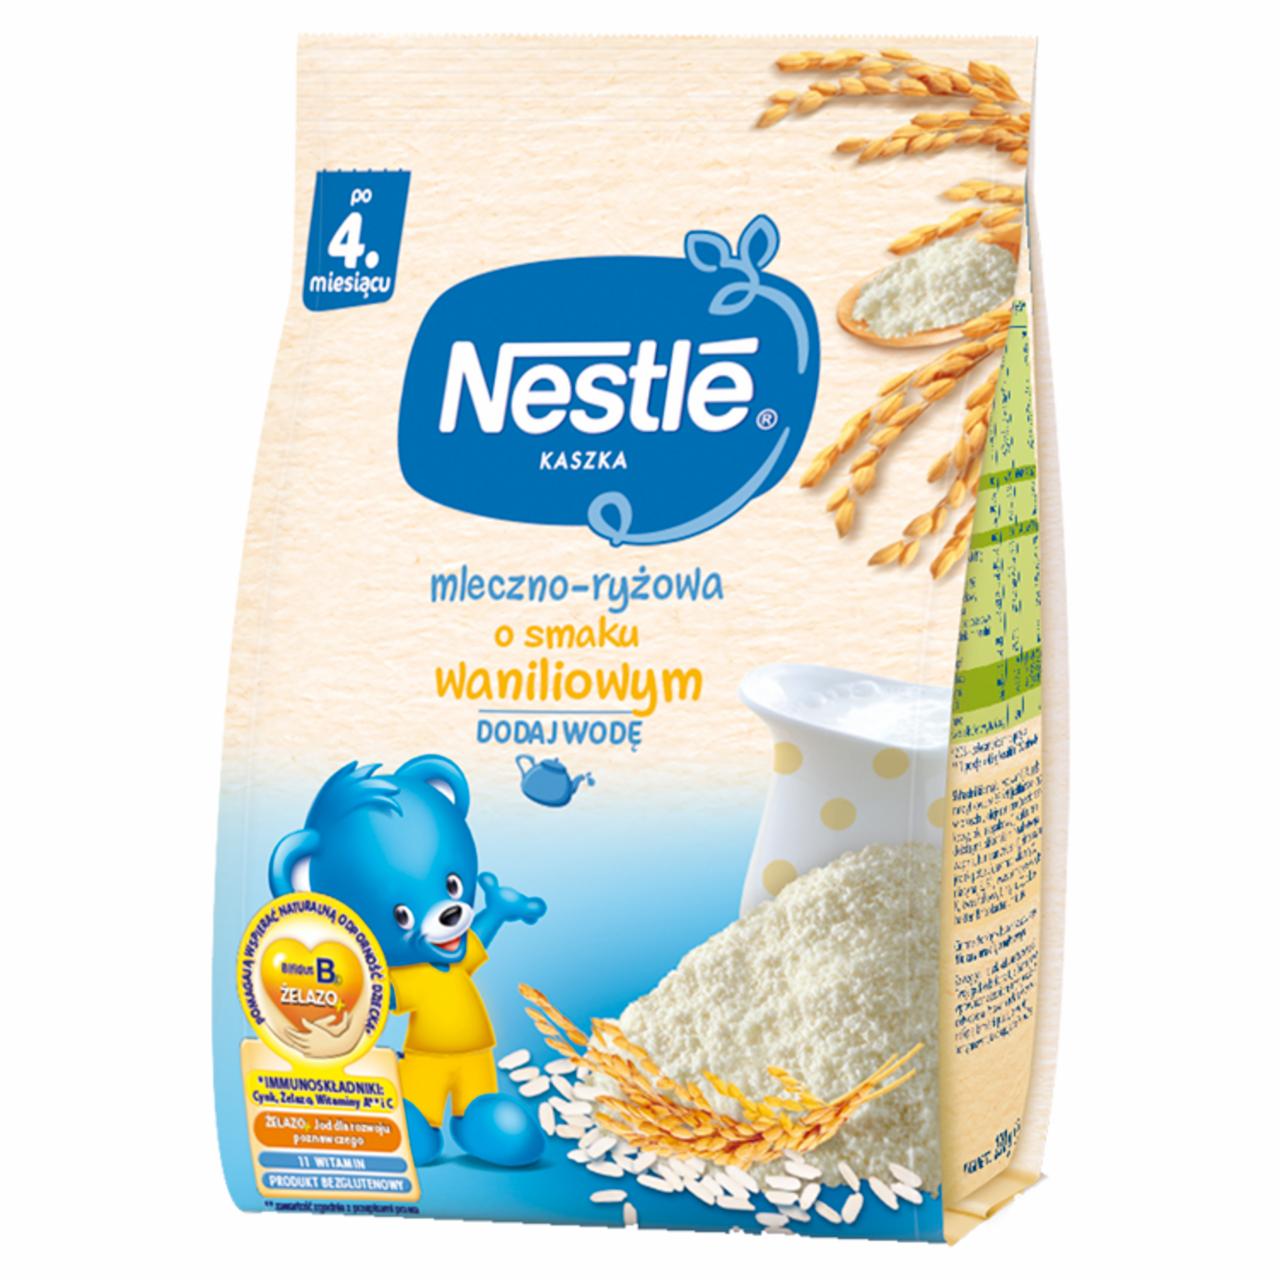 Zdjęcia - Nestlé Kaszka mleczno-ryżowa wanilia dla niemowląt po 4. miesiącu 230 g